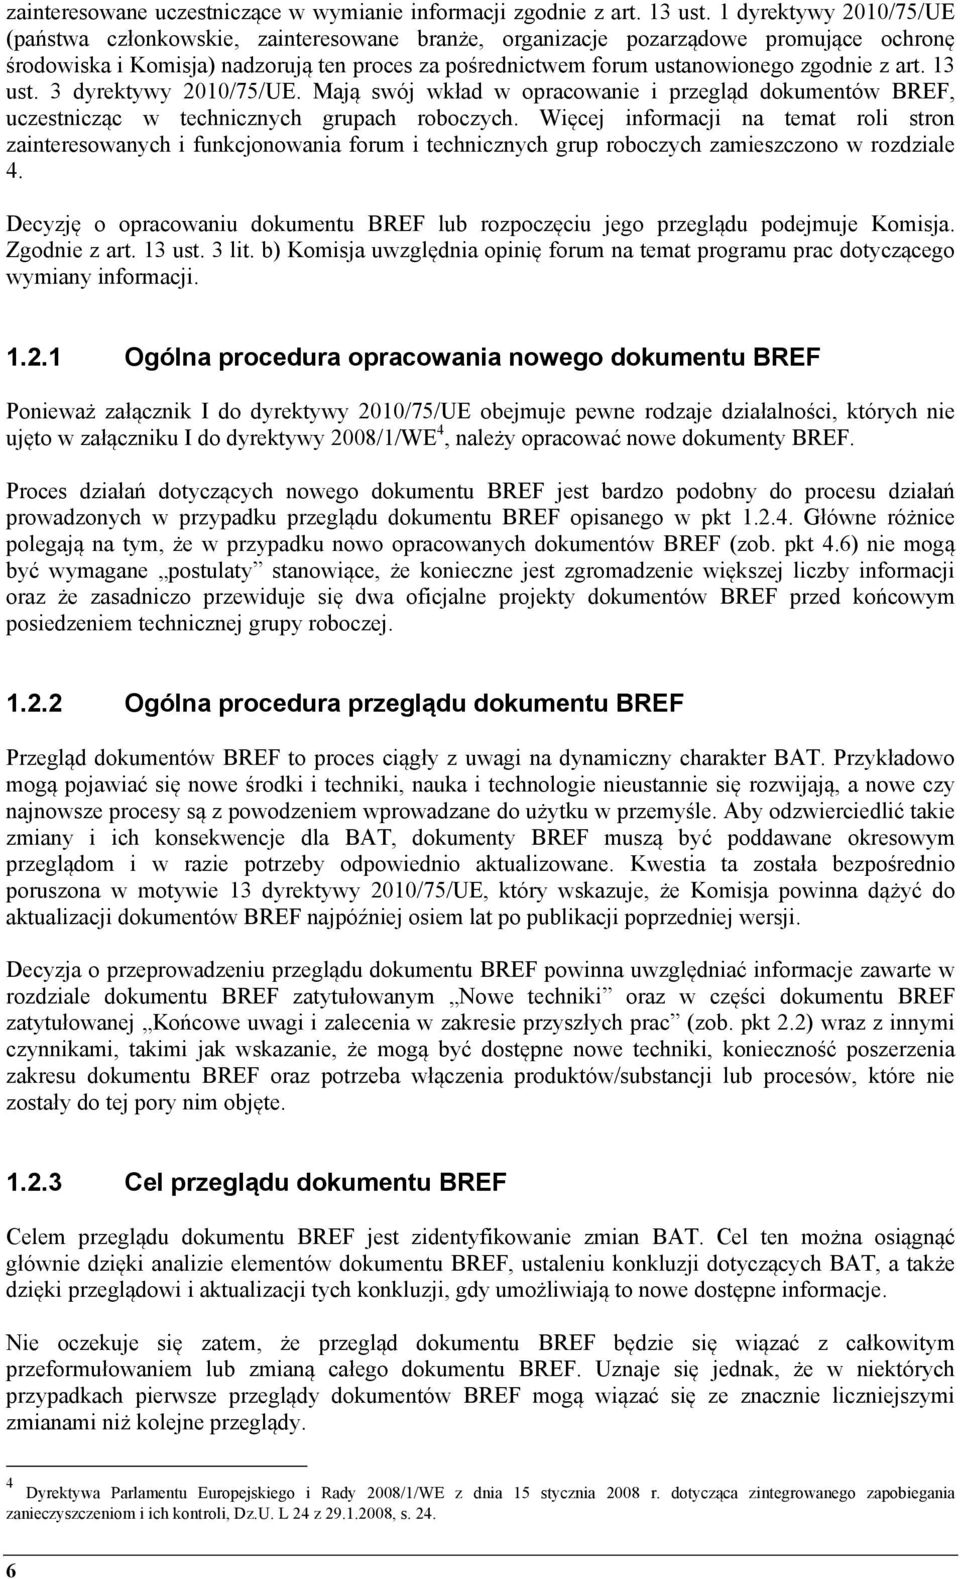 z art. 13 ust. 3 dyrektywy 2010/75/UE. Mają swój wkład w opracowanie i przegląd dokumentów BREF, uczestnicząc w technicznych grupach roboczych.